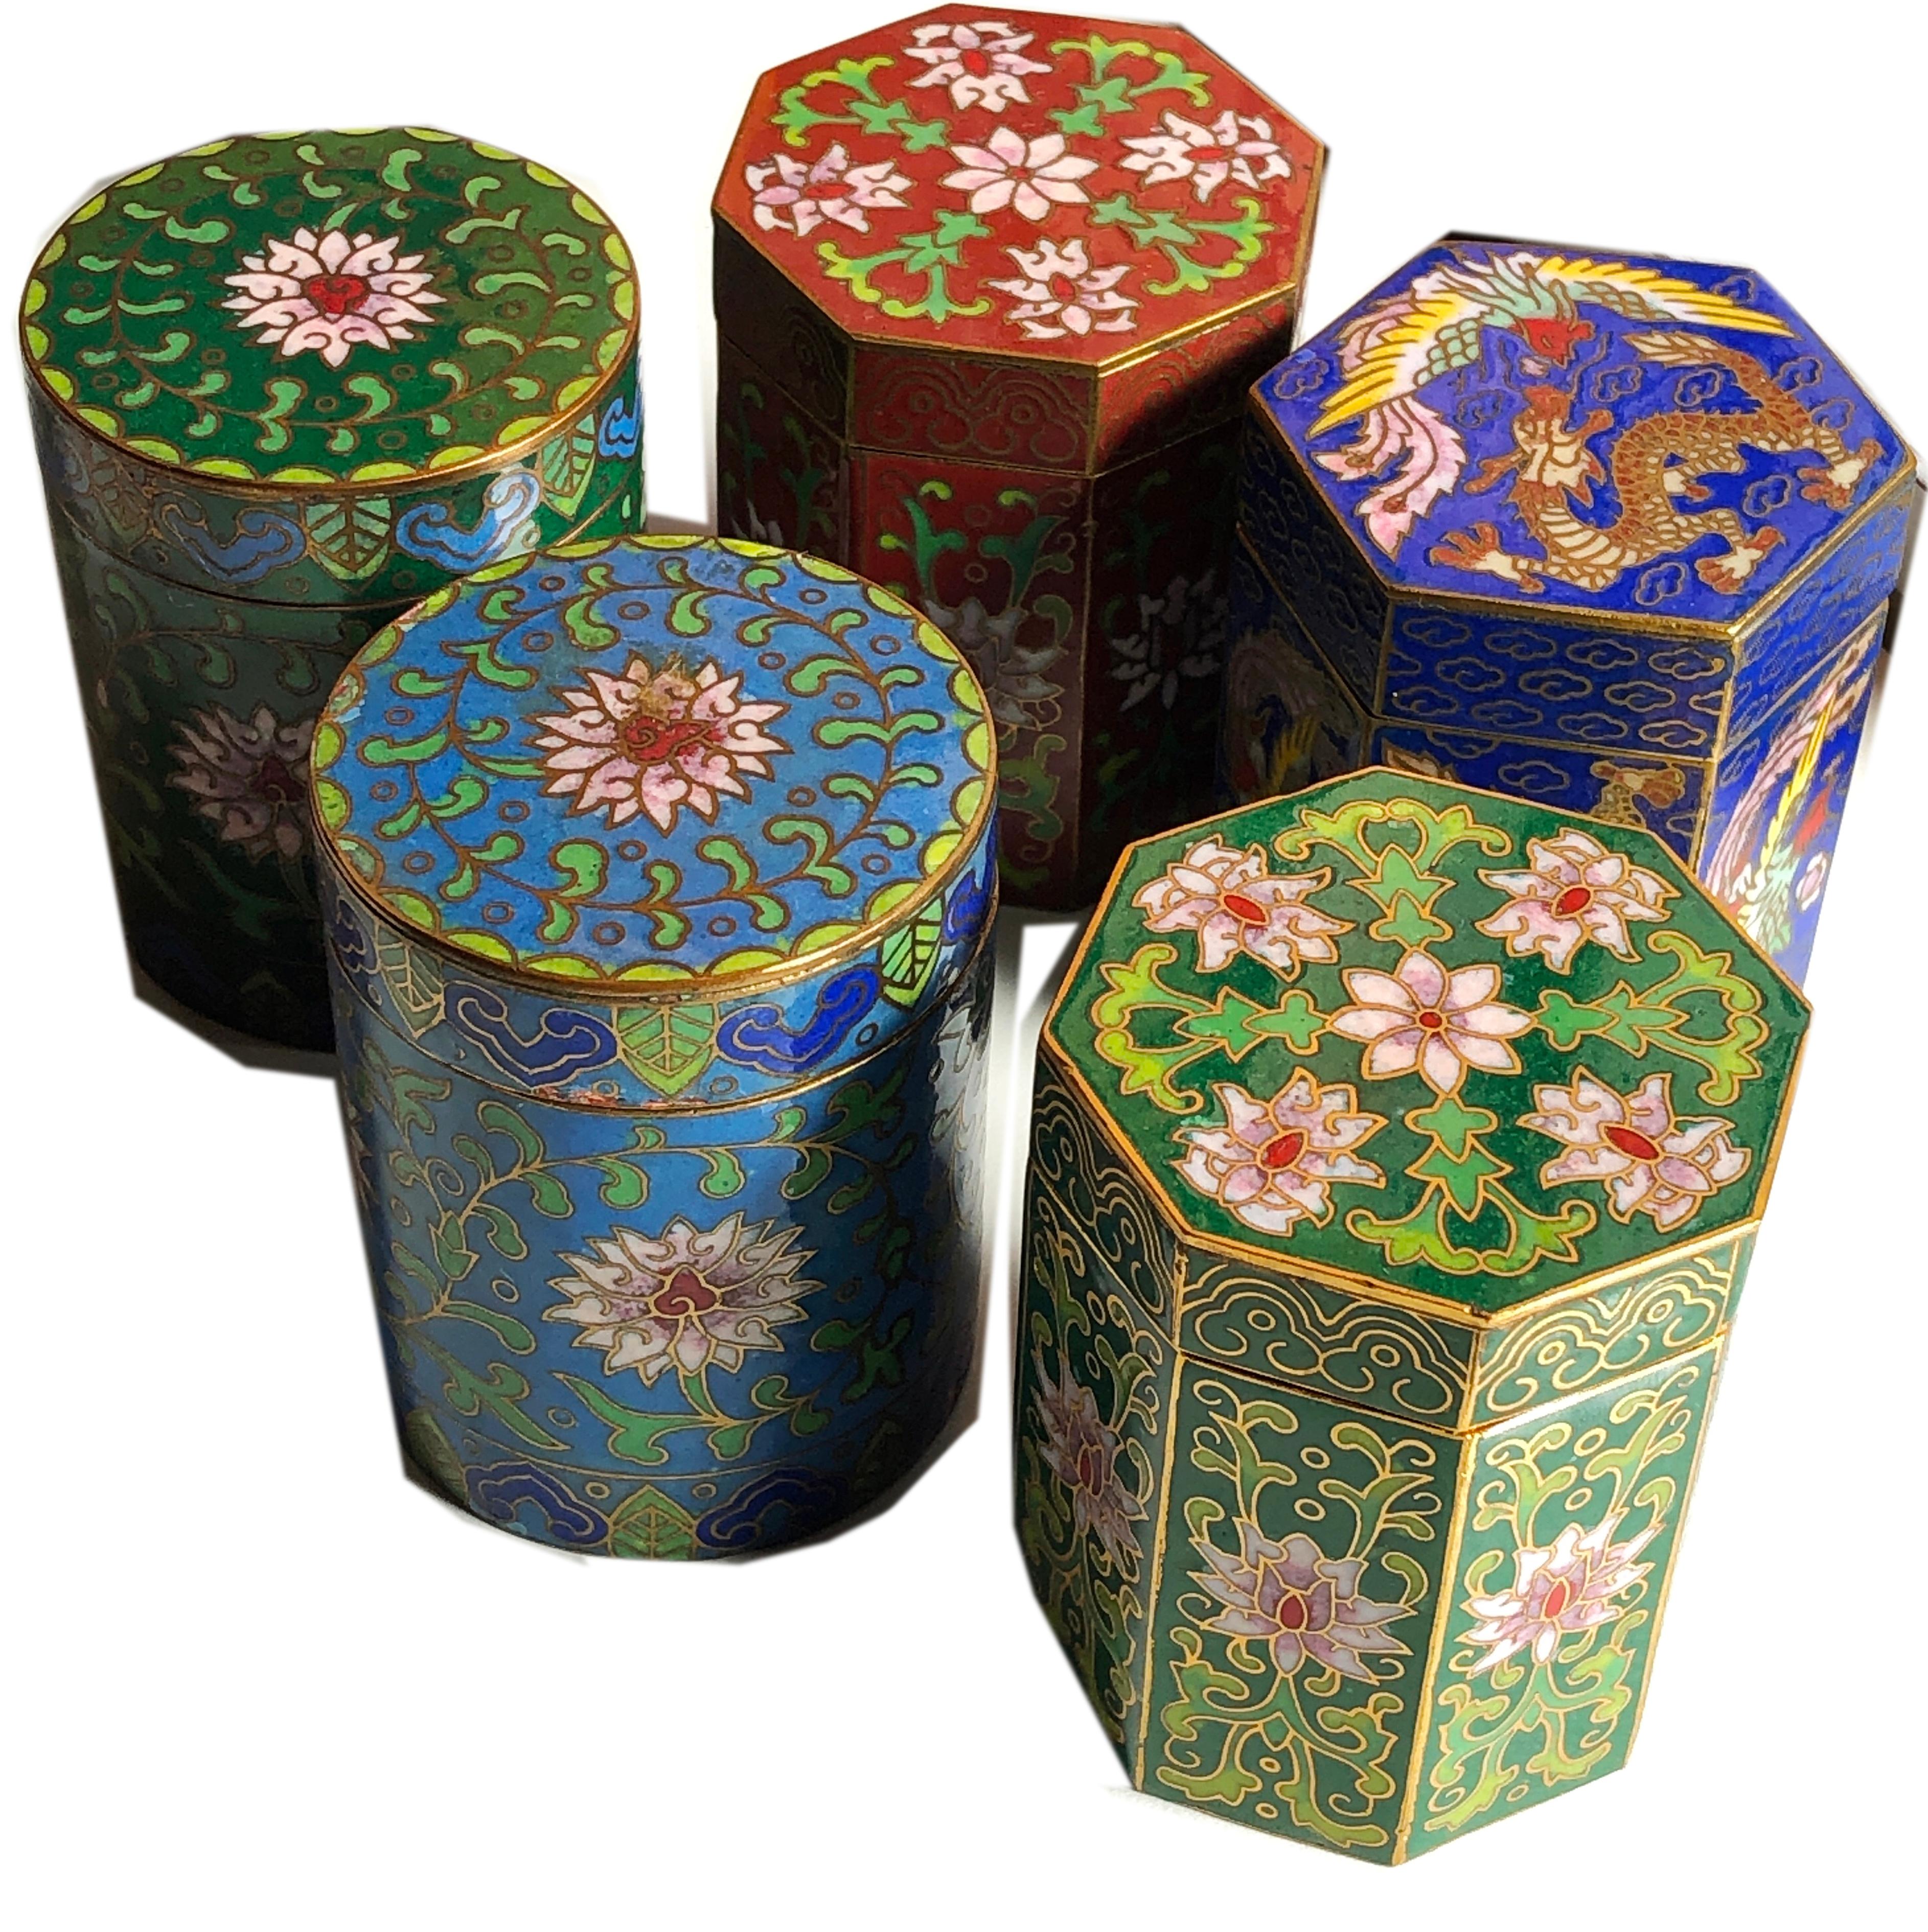 Circa 1949 Gu Yi Zhai Beijing Cloisonné Boxes Collection For Sale 7